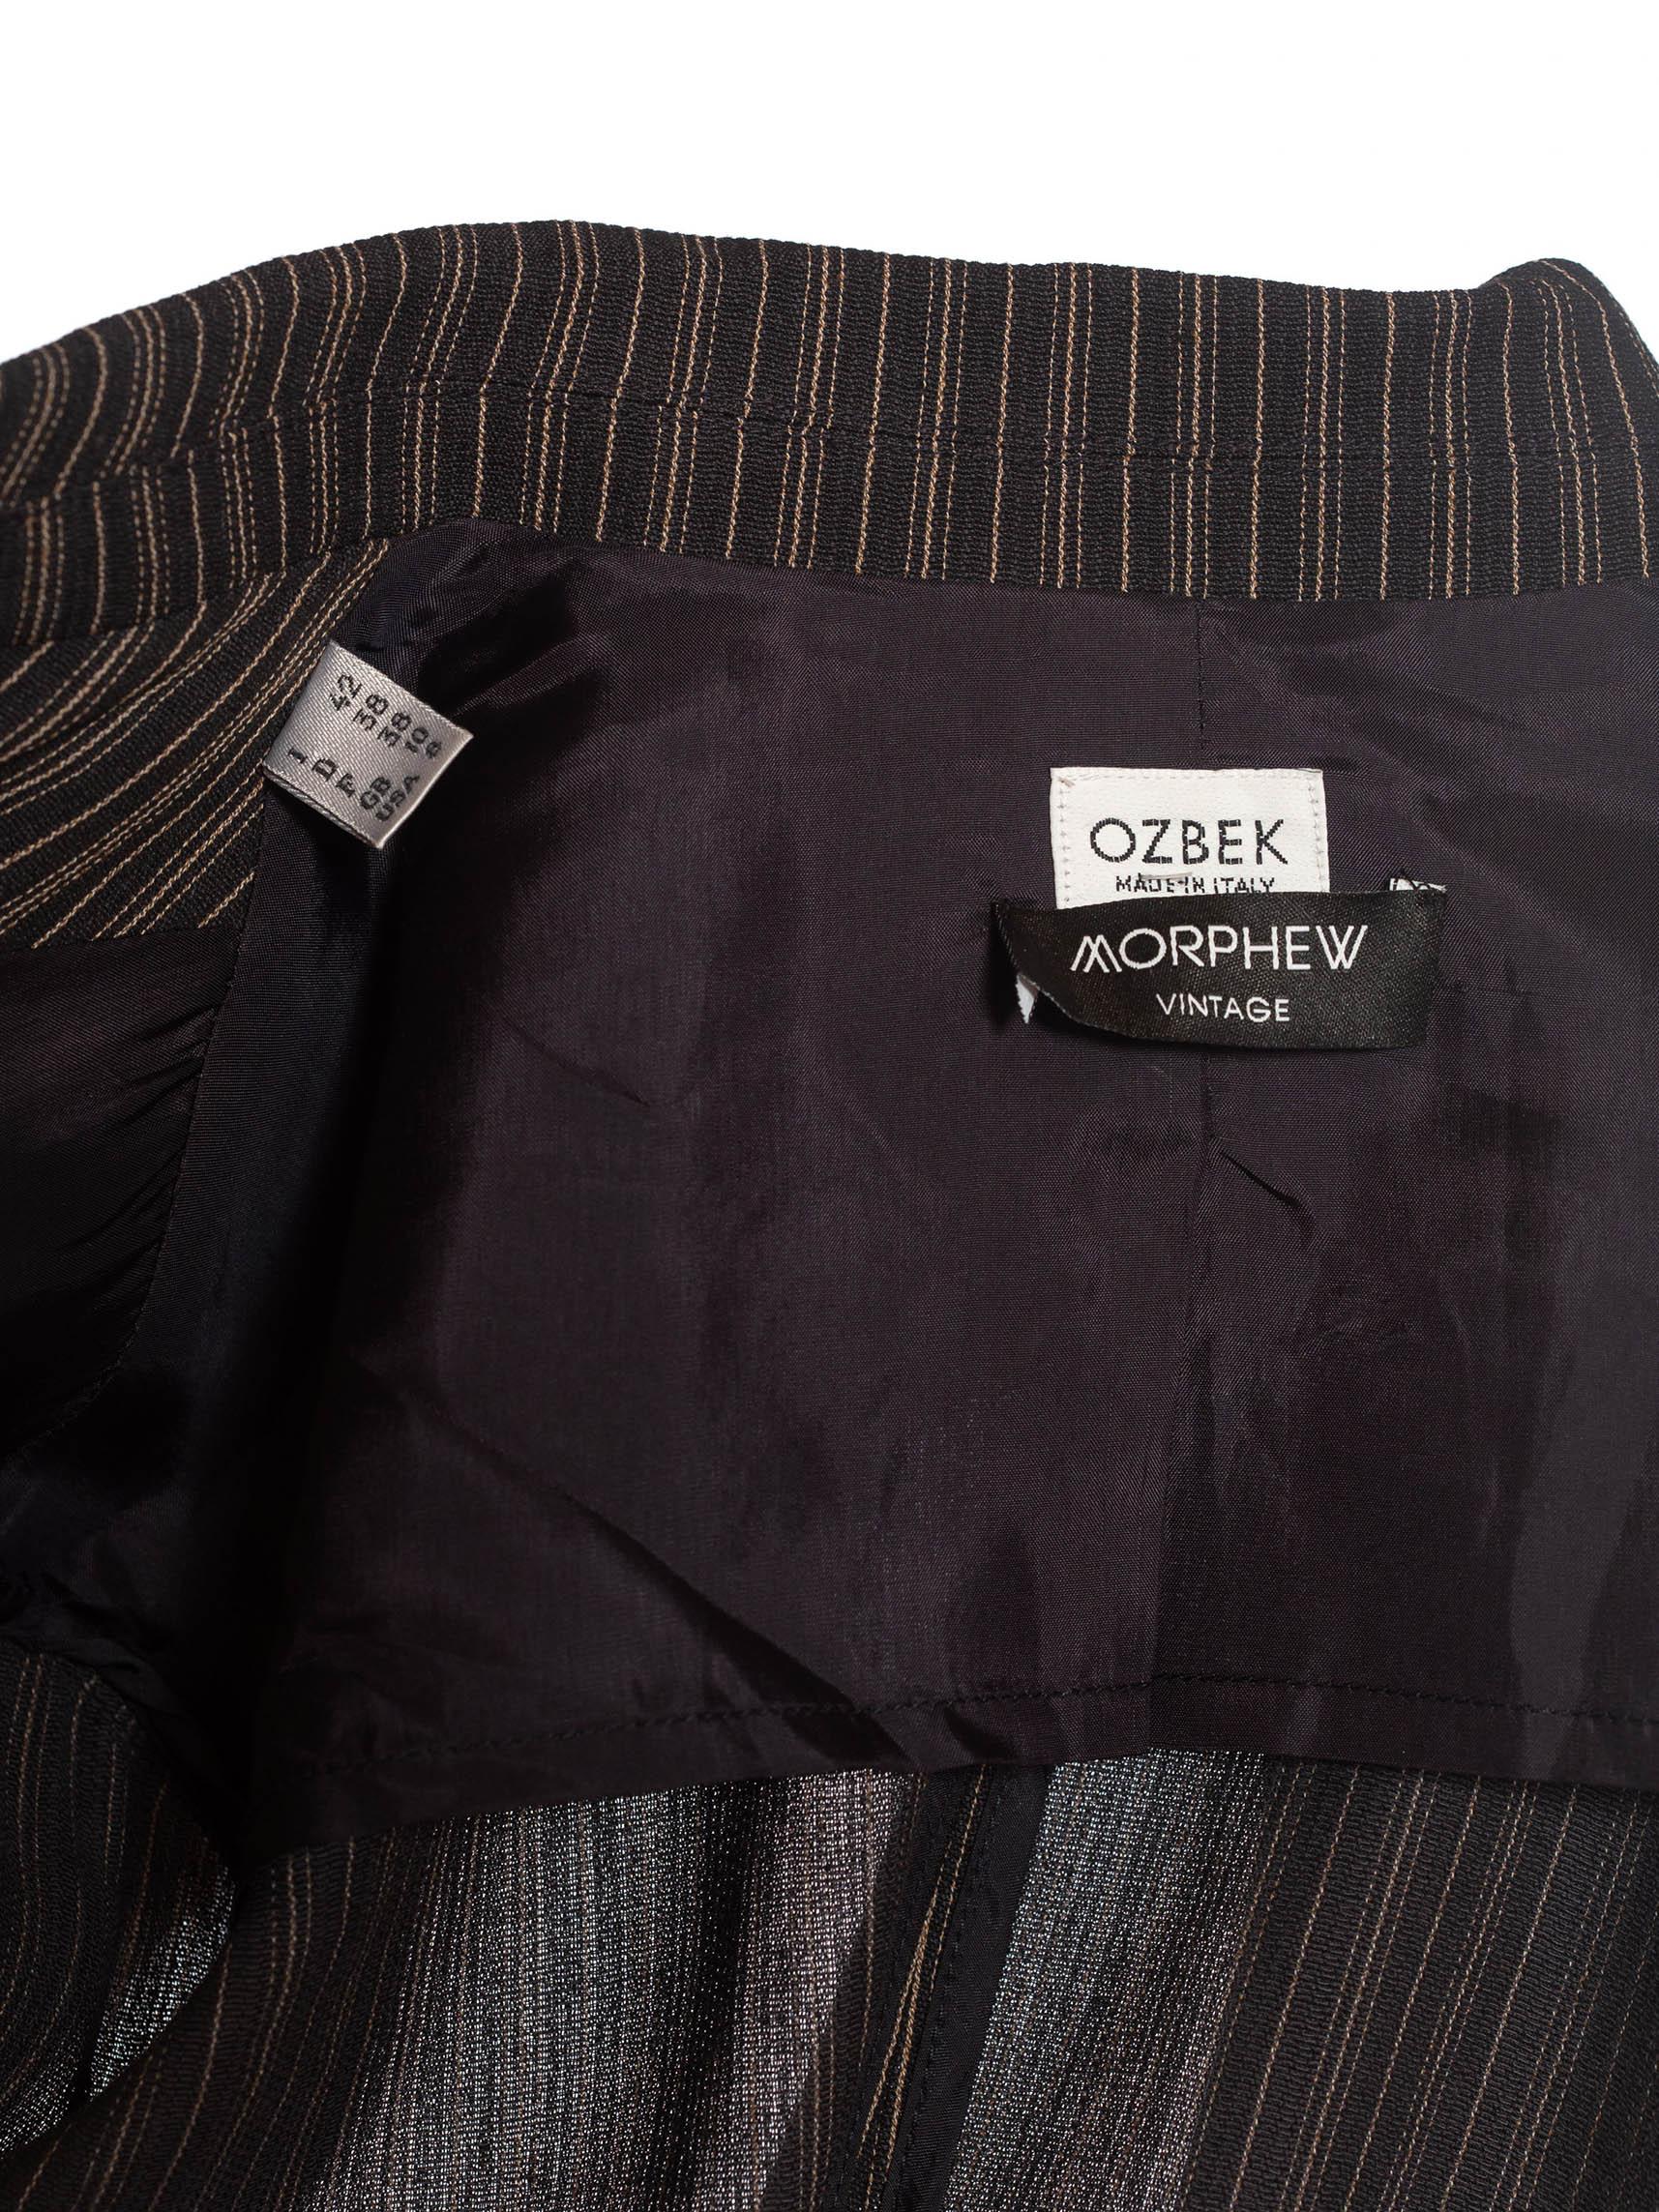 1990S RIFAT OZBEK Black & Beige Linen Blend Pinstripe Pant Suit 7